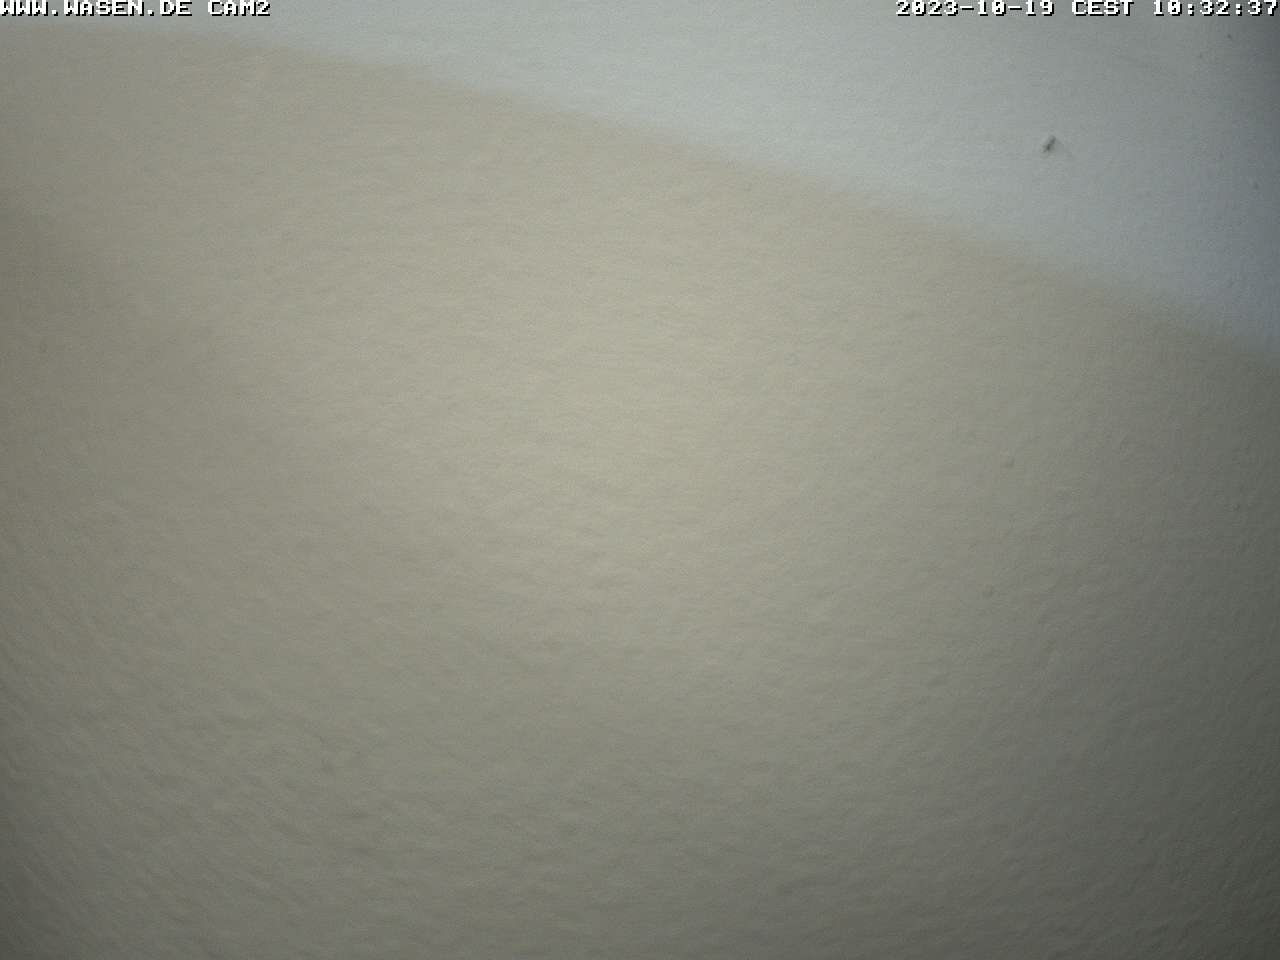 Webcam Cannstatter Wasen 2022 - Ost